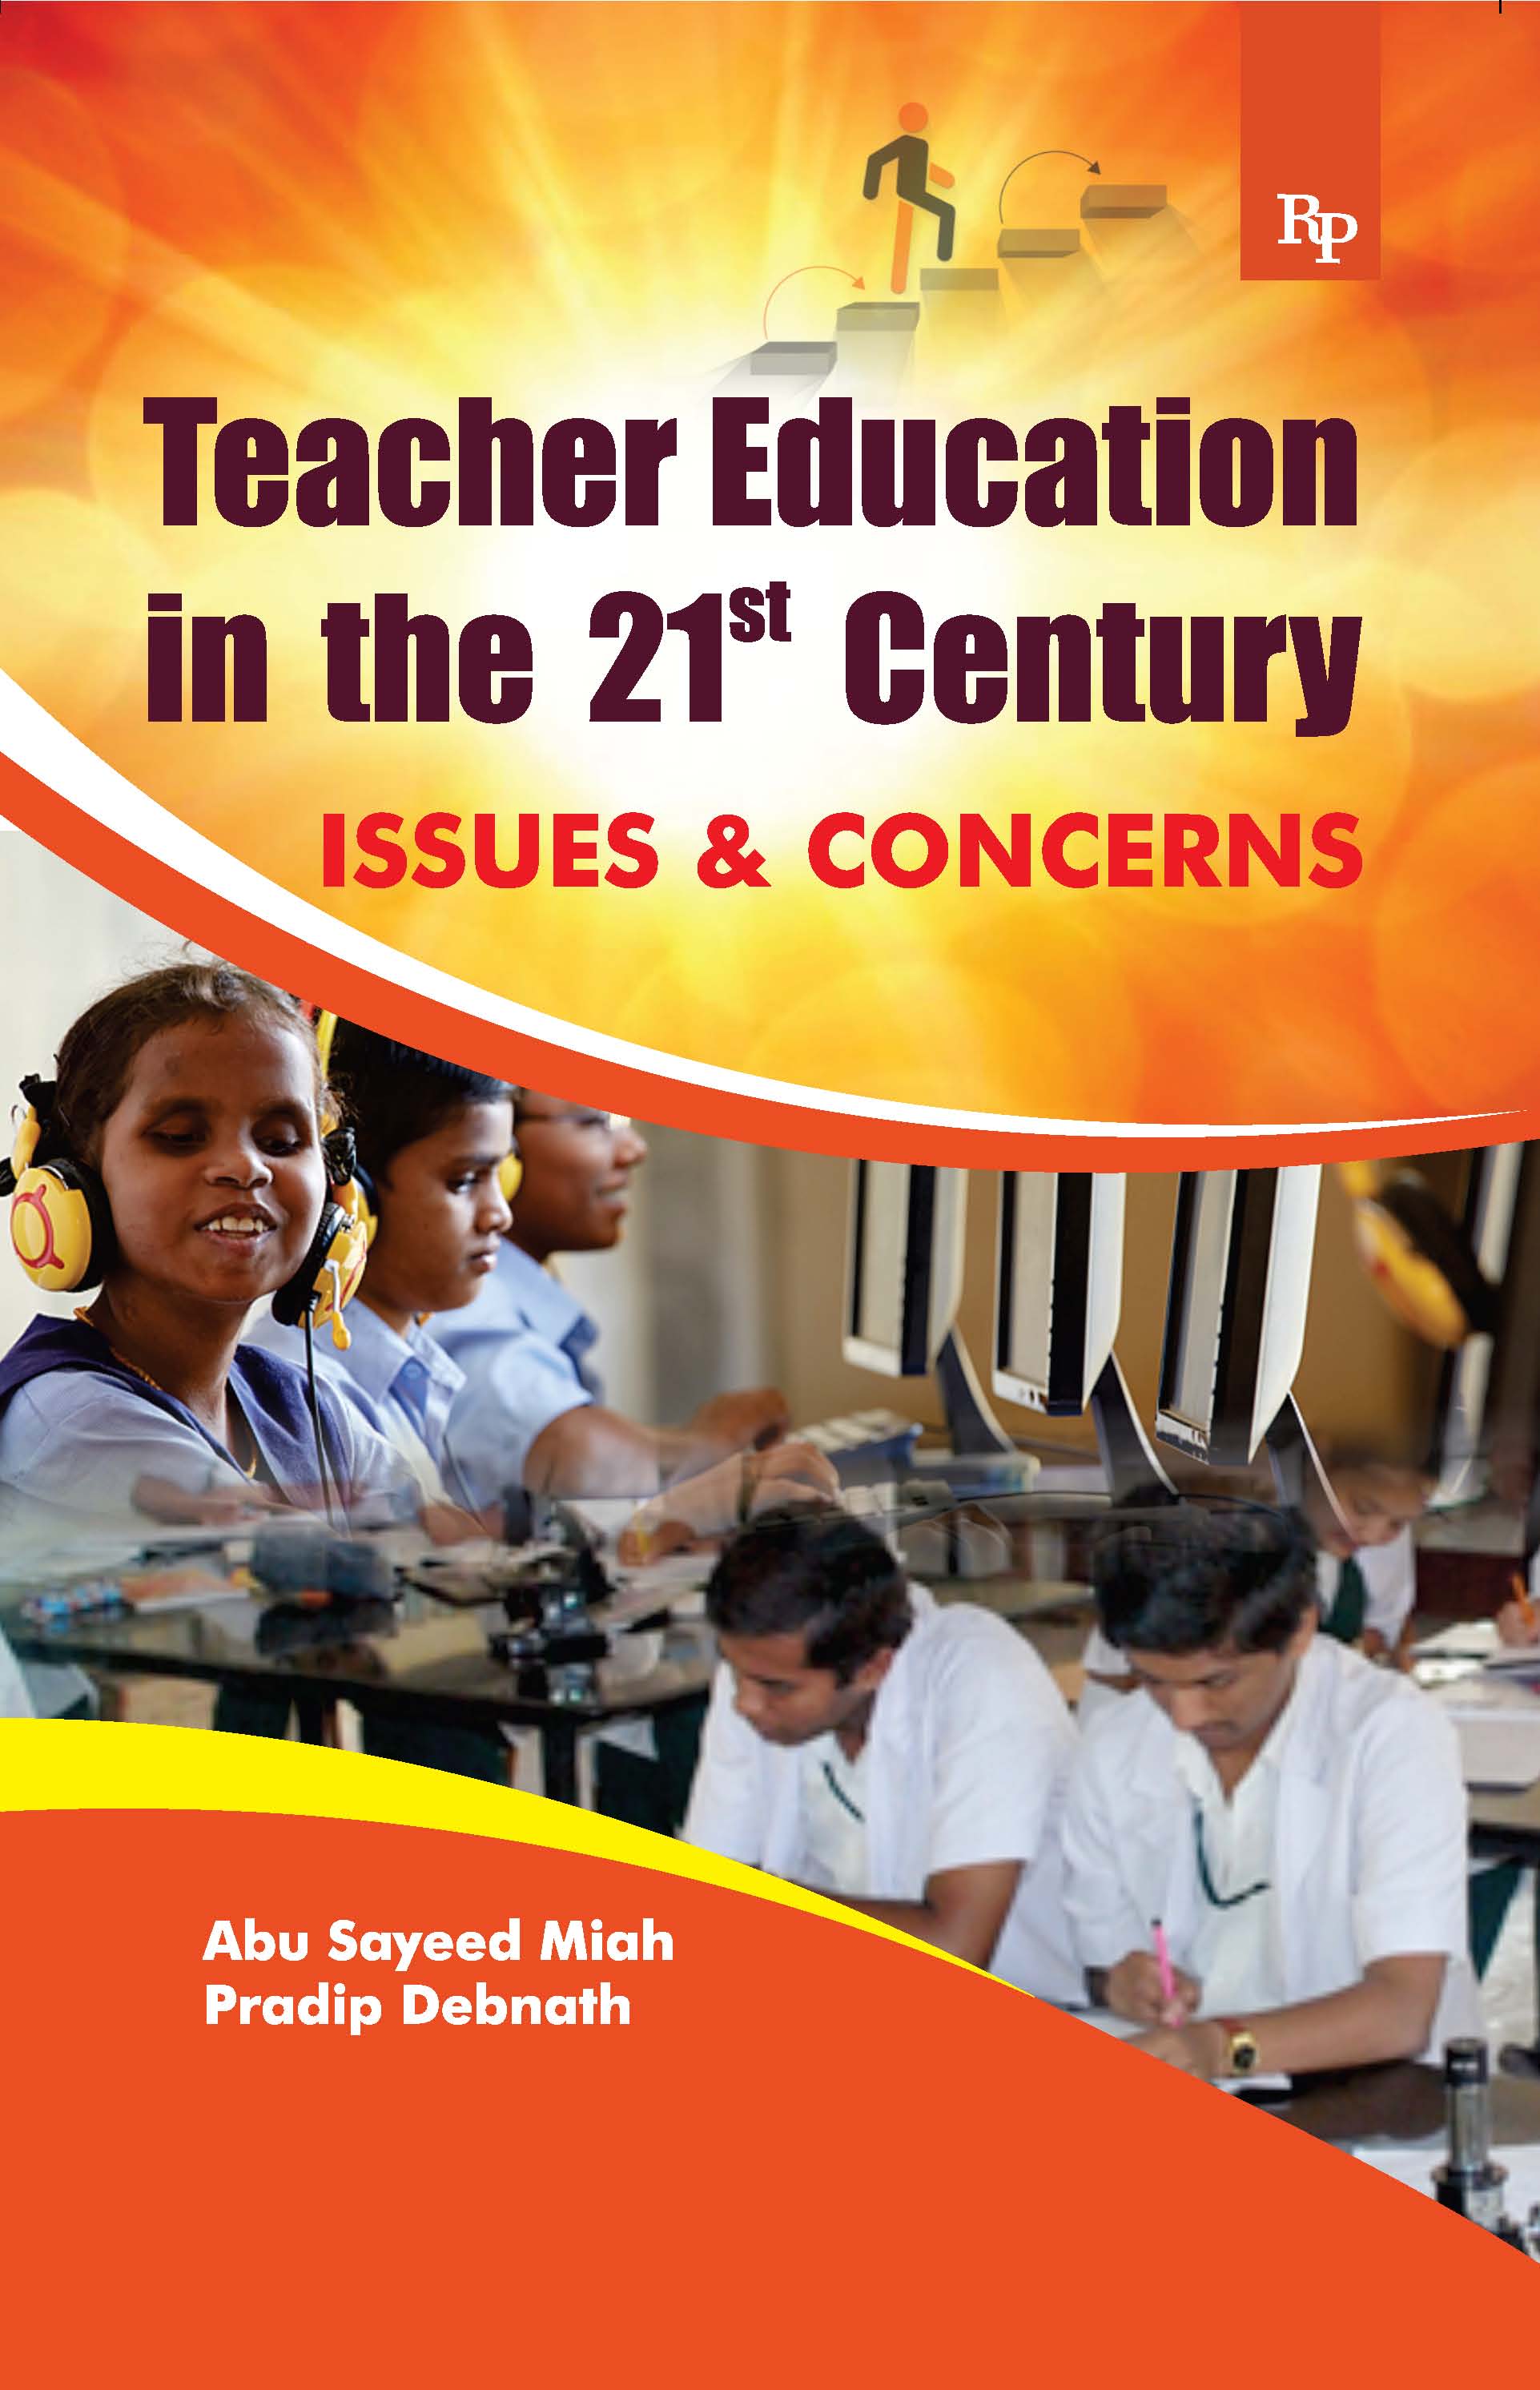 Teacher Education in 21st Centuary new.jpg